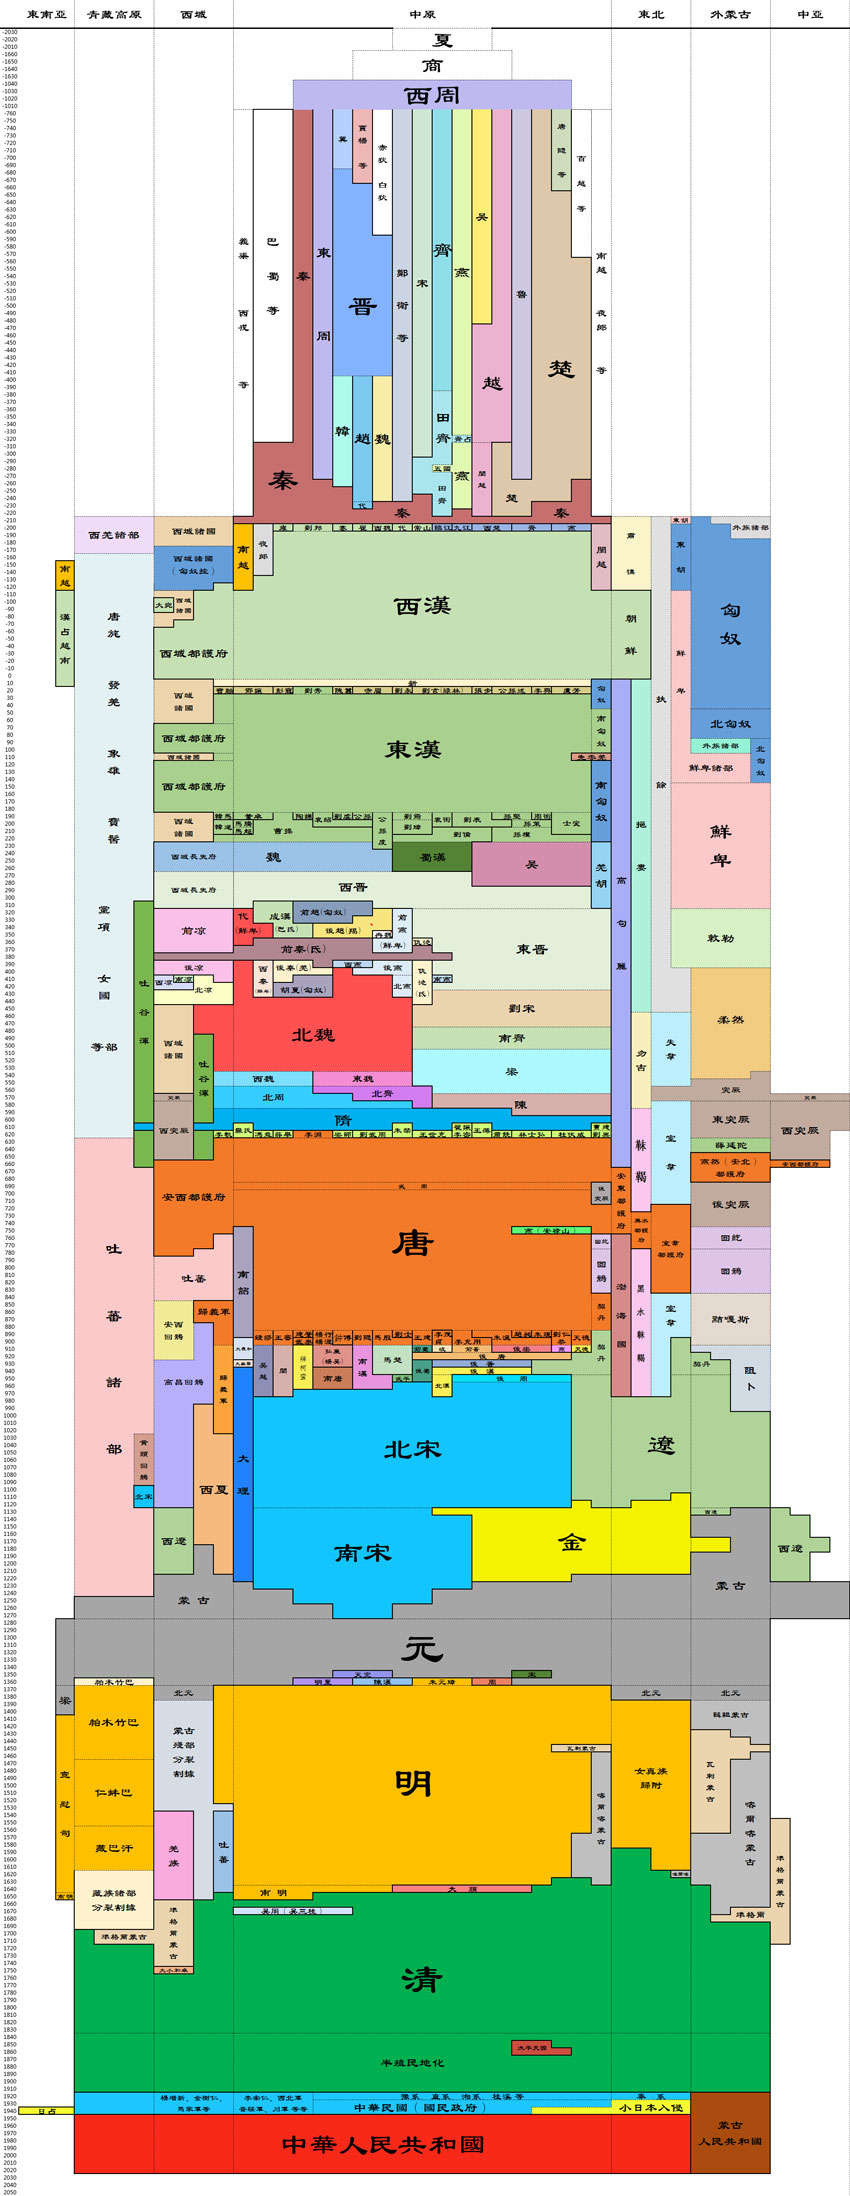 中国历史朝代跨度表